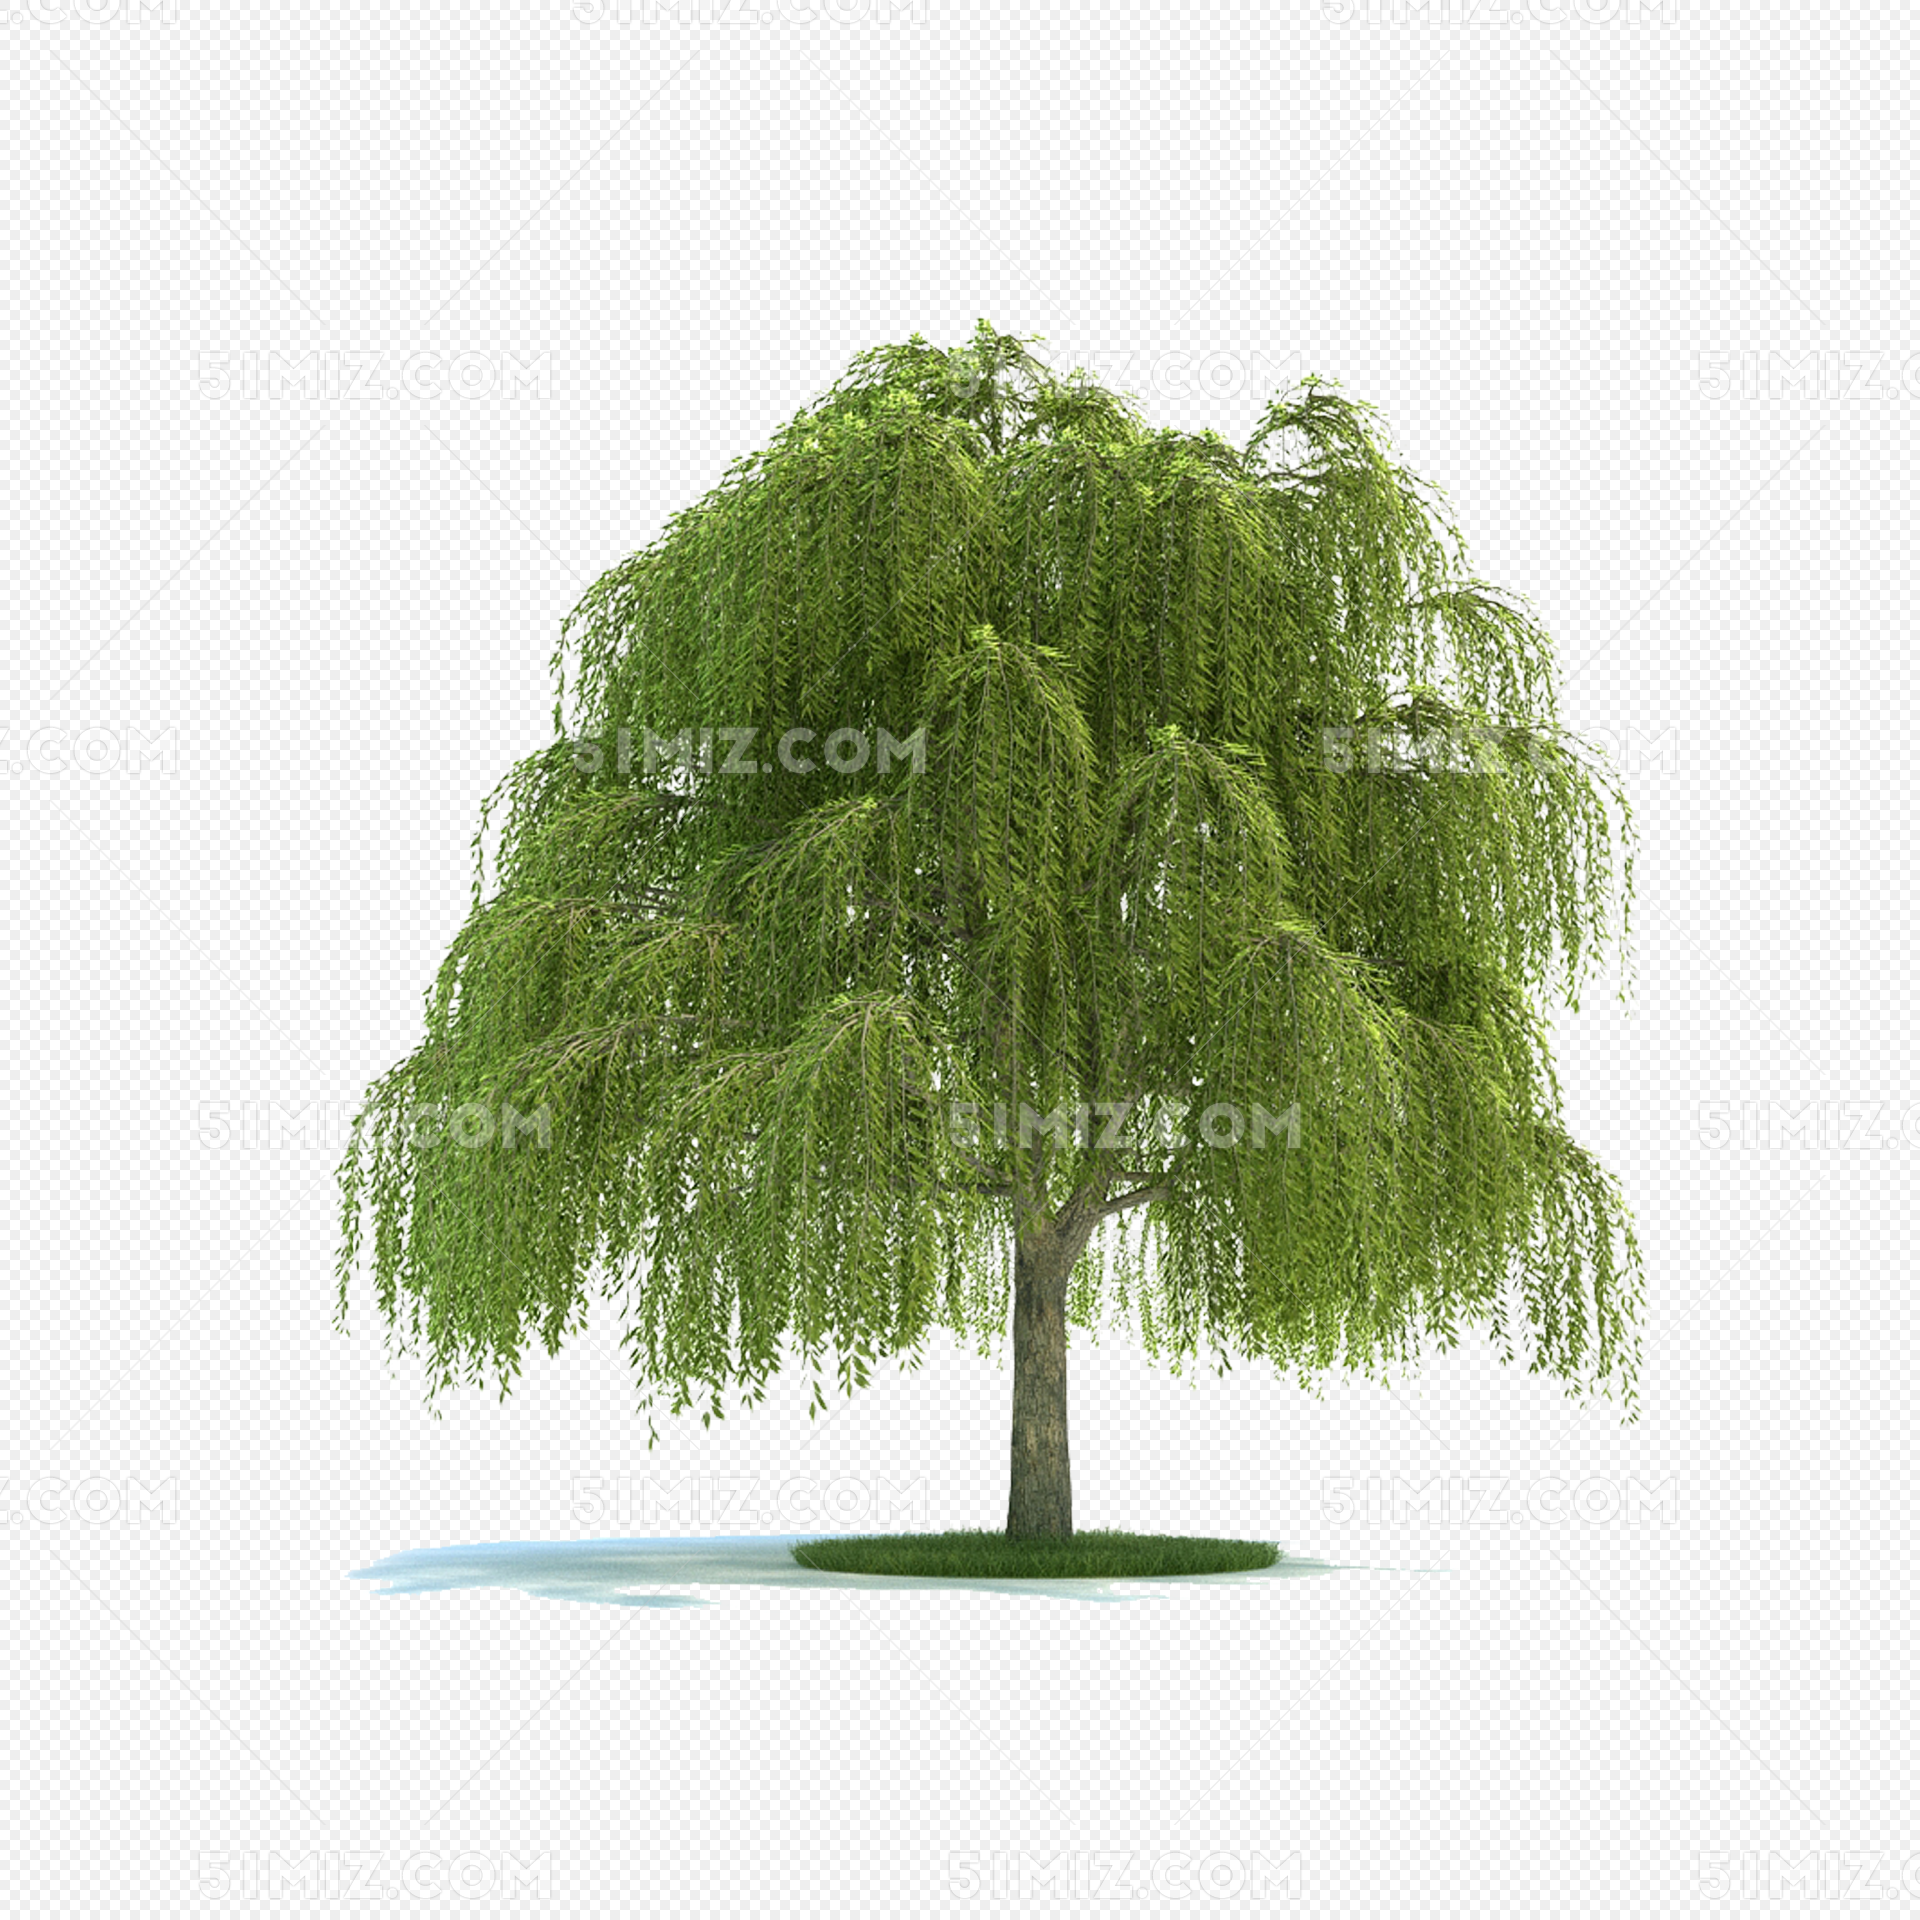 卡通柳樹 手繪柳樹 漂亮的柳樹 綠色的樹葉, 植物裝飾, 植物圖, 樹葉樹葉植物綠色綠植素材圖案，PSD和PNG圖片免費下載